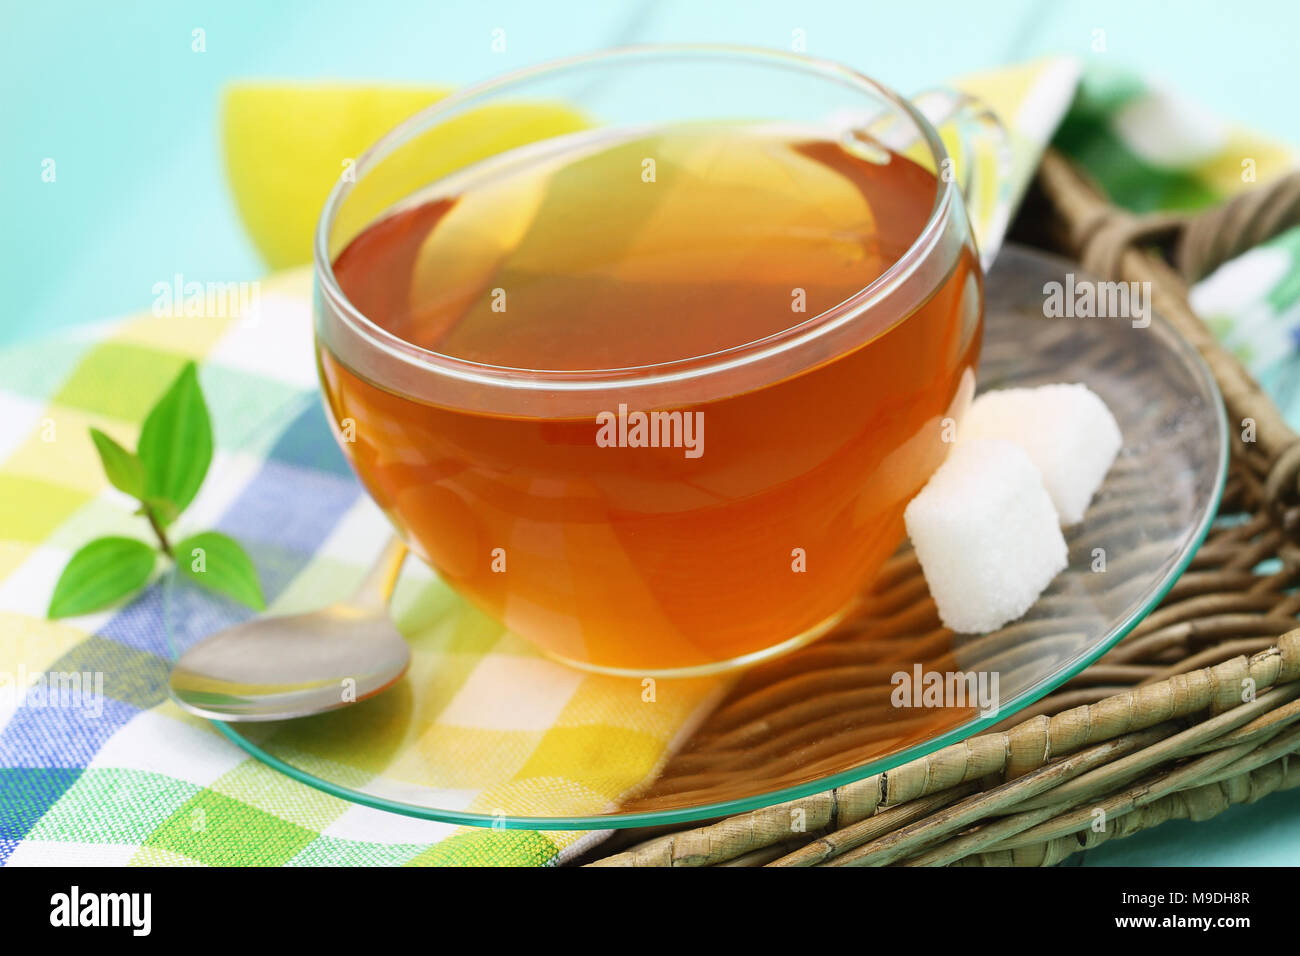 Tazza di tè al limone con due cubetti di zucchero, primo piano Foto Stock